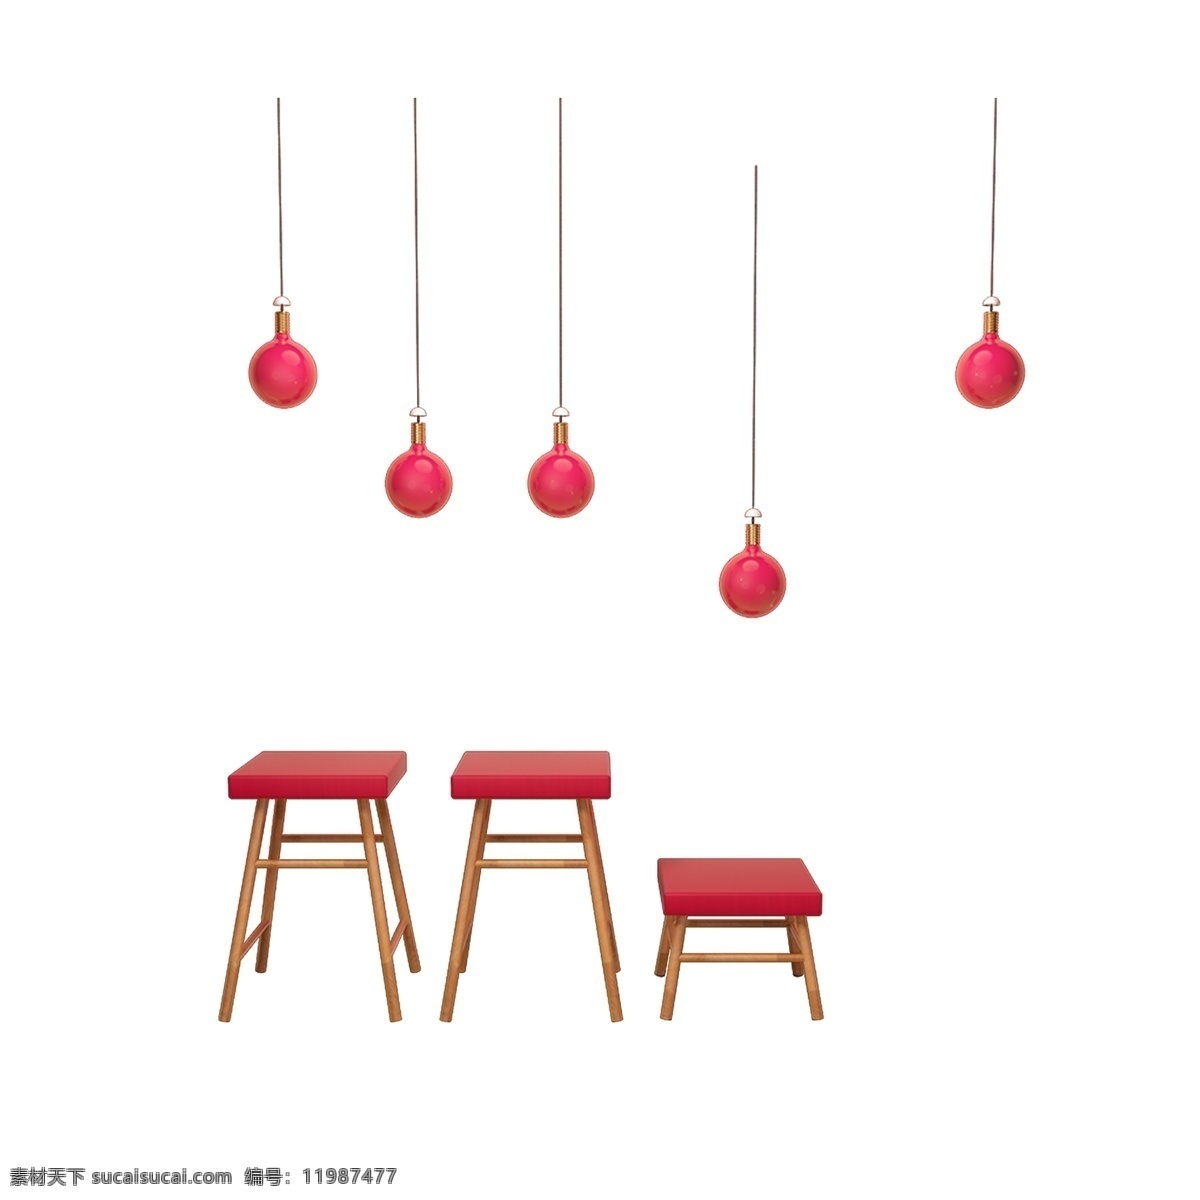 一些 红色 小 灯 小木凳 木材 家庭木凳 四方凳子 四角凳子 小小板凳 古家具 吊灯 小吊灯 家居装饰